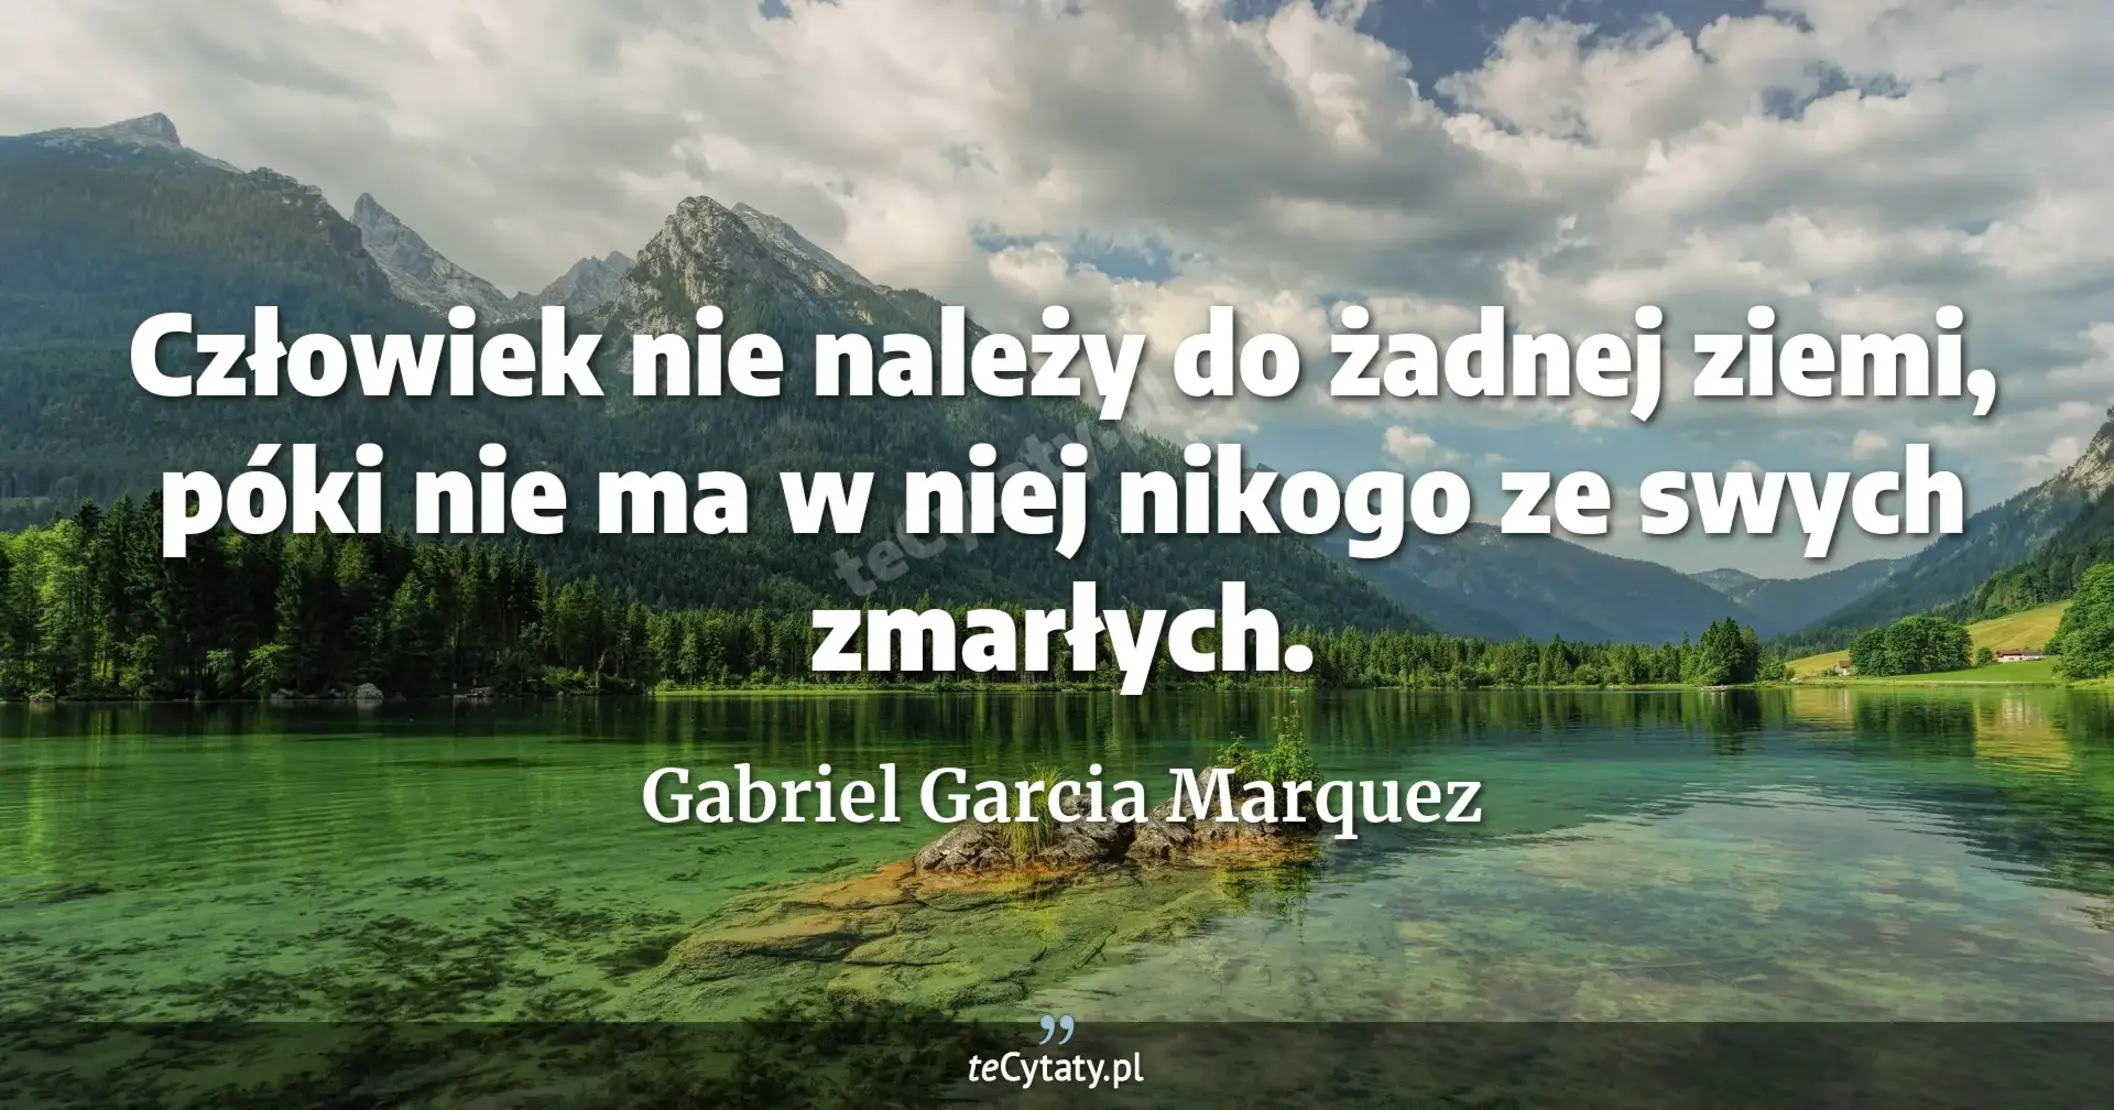 Człowiek nie należy do żadnej ziemi, póki nie ma w niej nikogo ze swych zmarłych. - Gabriel Garcia Marquez